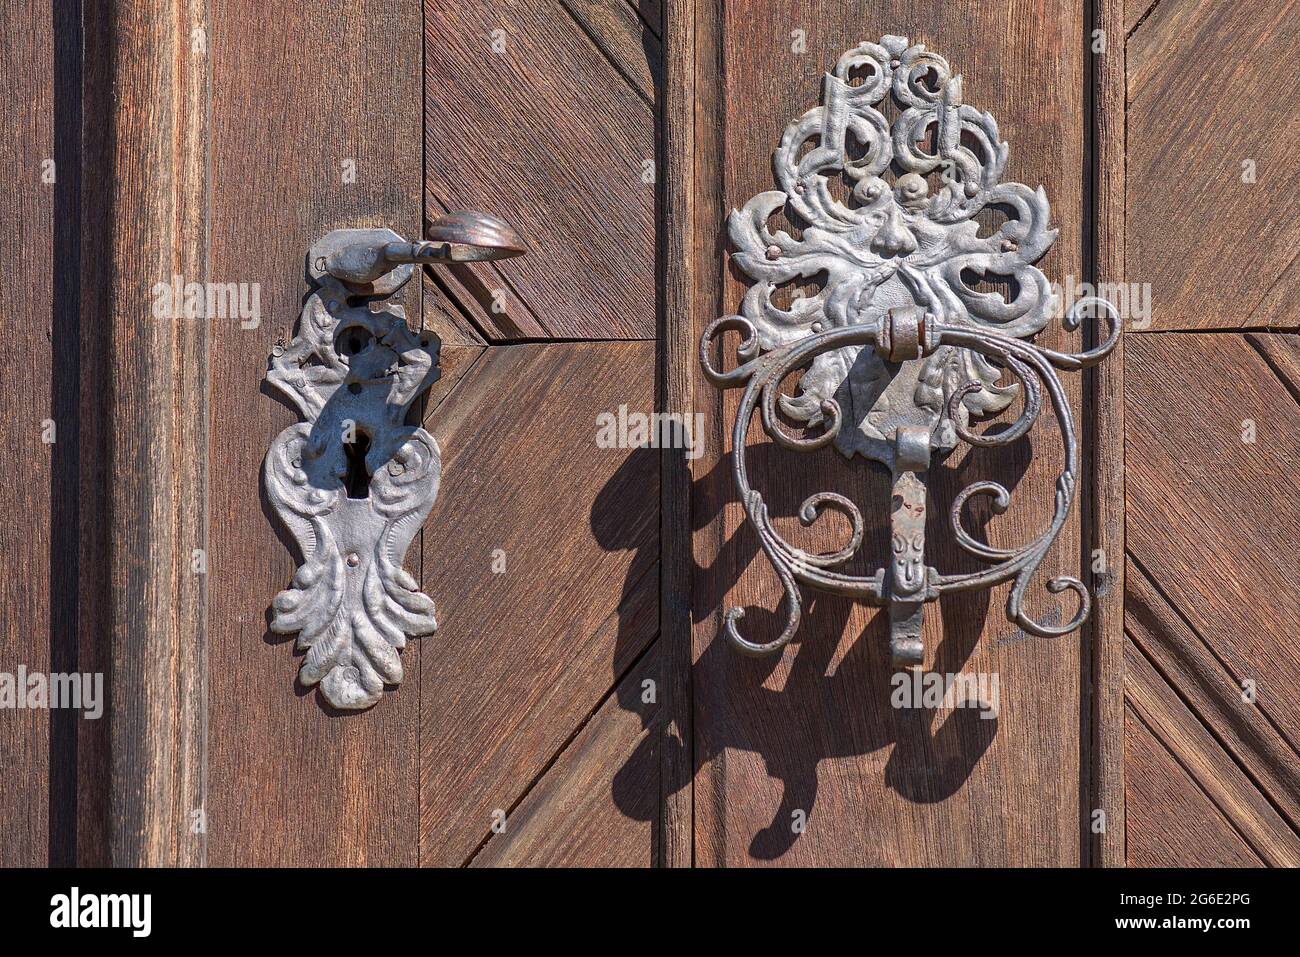 Türklopfer an der Eingangstür zum Schlossgebäude, Schloss Aschbach, Aschbach, Oberfranken, Bayern, Deutschland Stockfoto